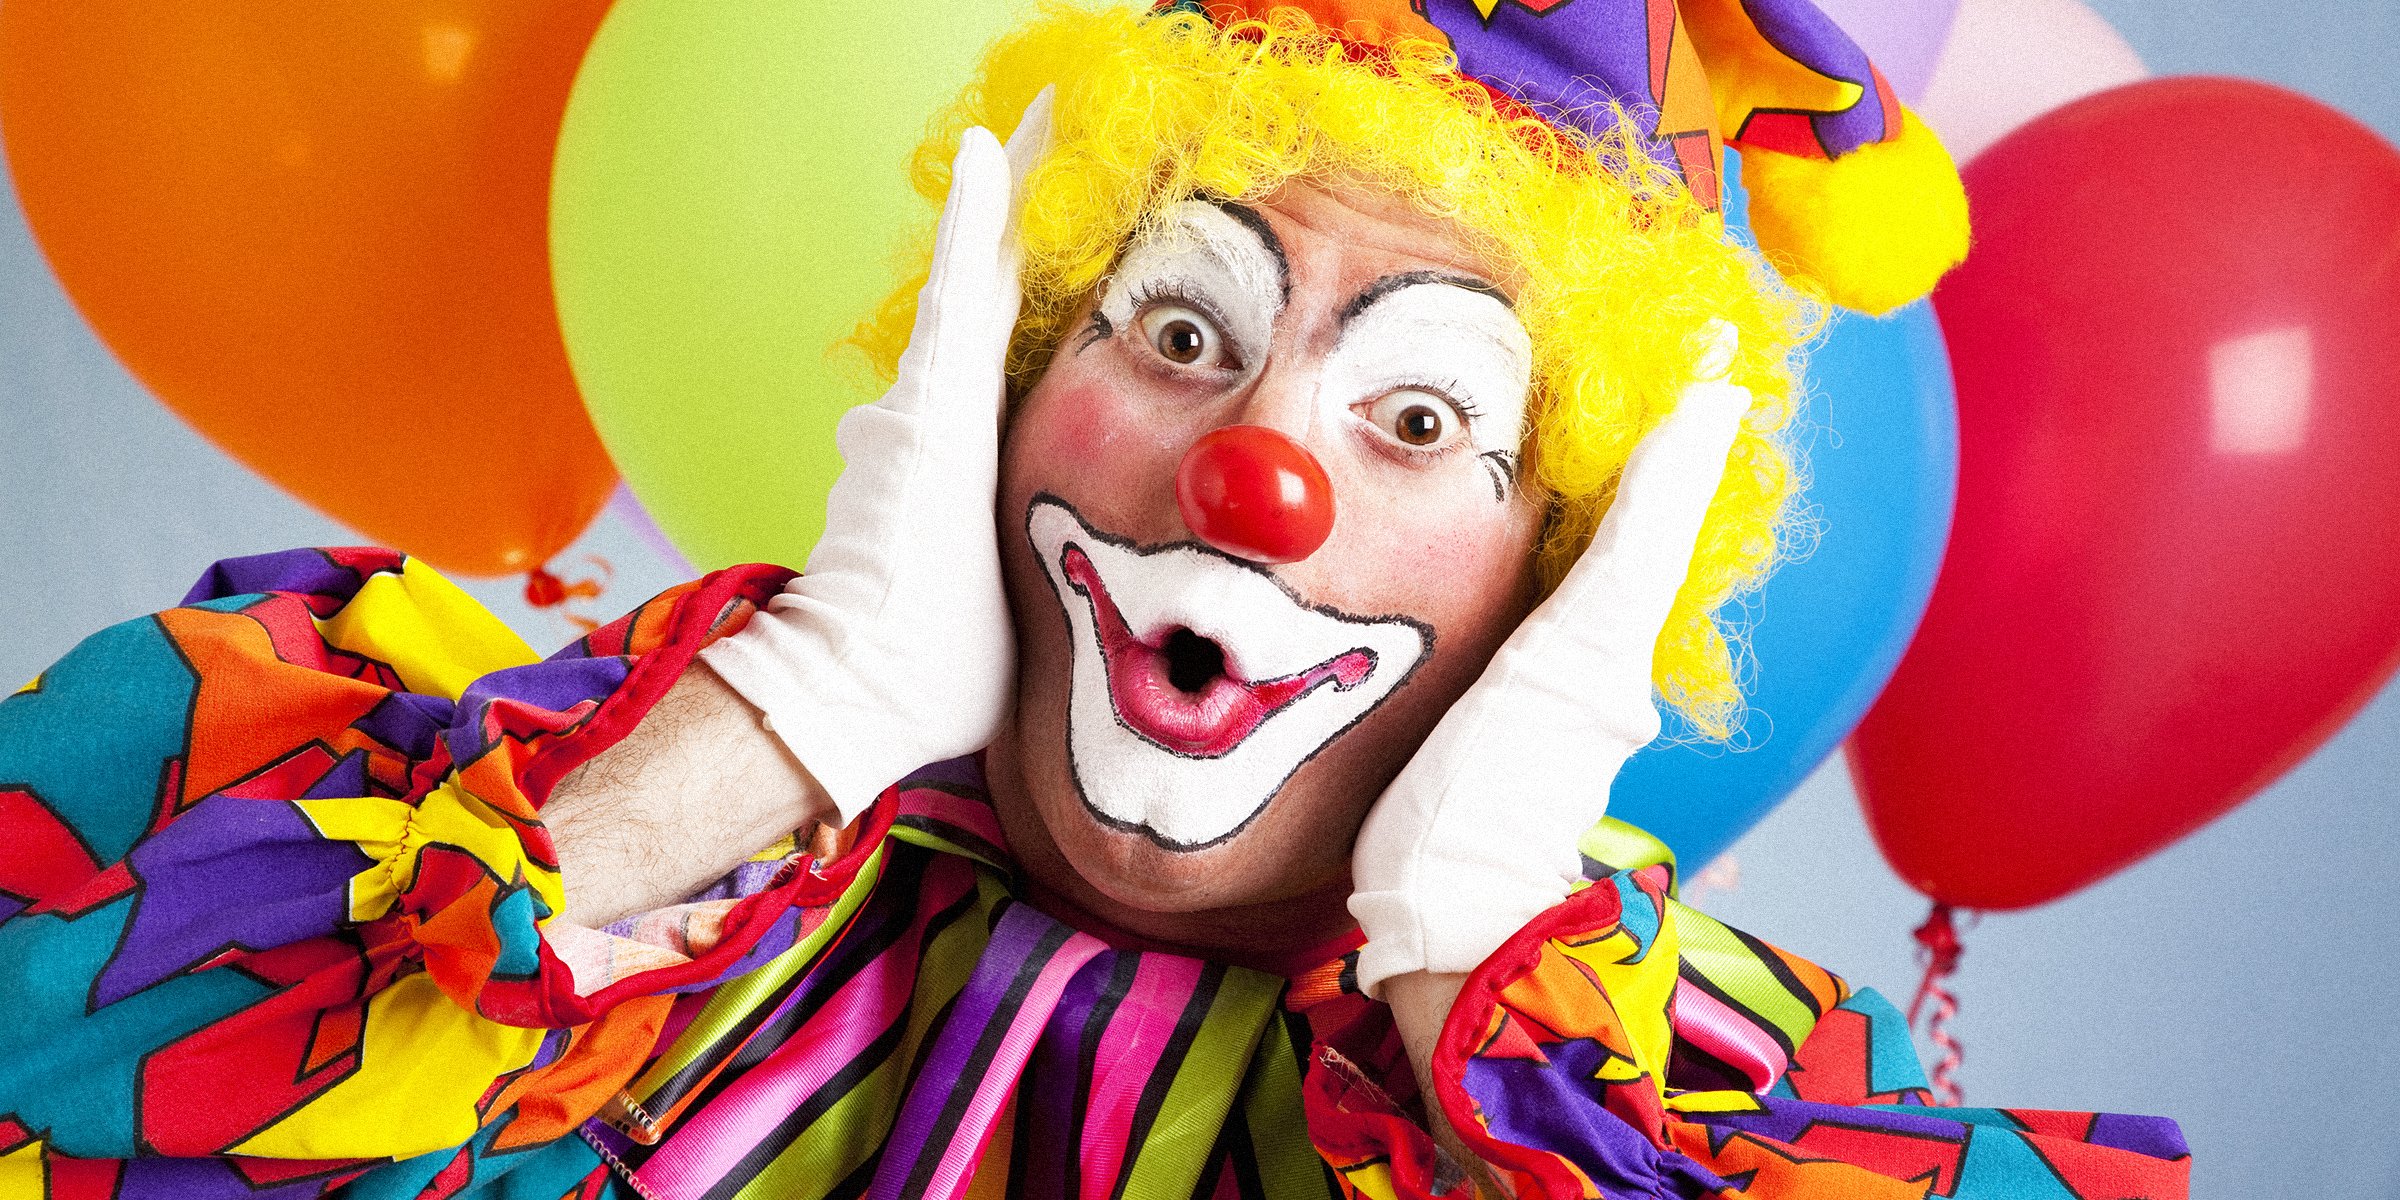 Clown | Source: Shutterstock